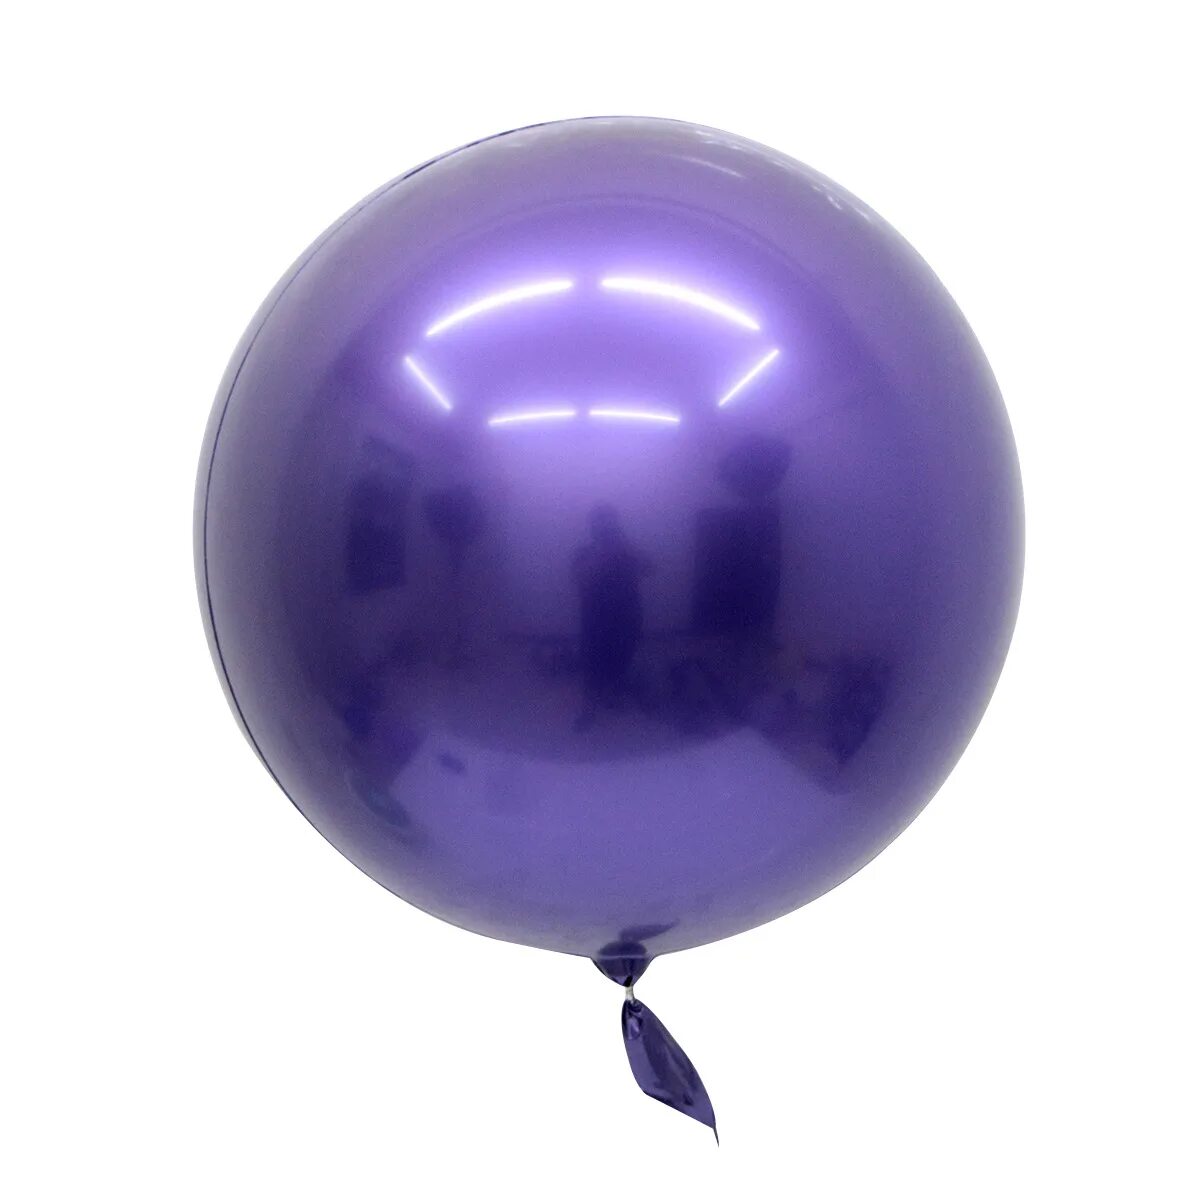 Образный шару. Шар Баблс 18 см. Шар Баблс фиолетовый. Шар хром 18 дюймов. Шар сфера Баблс сиреневый.